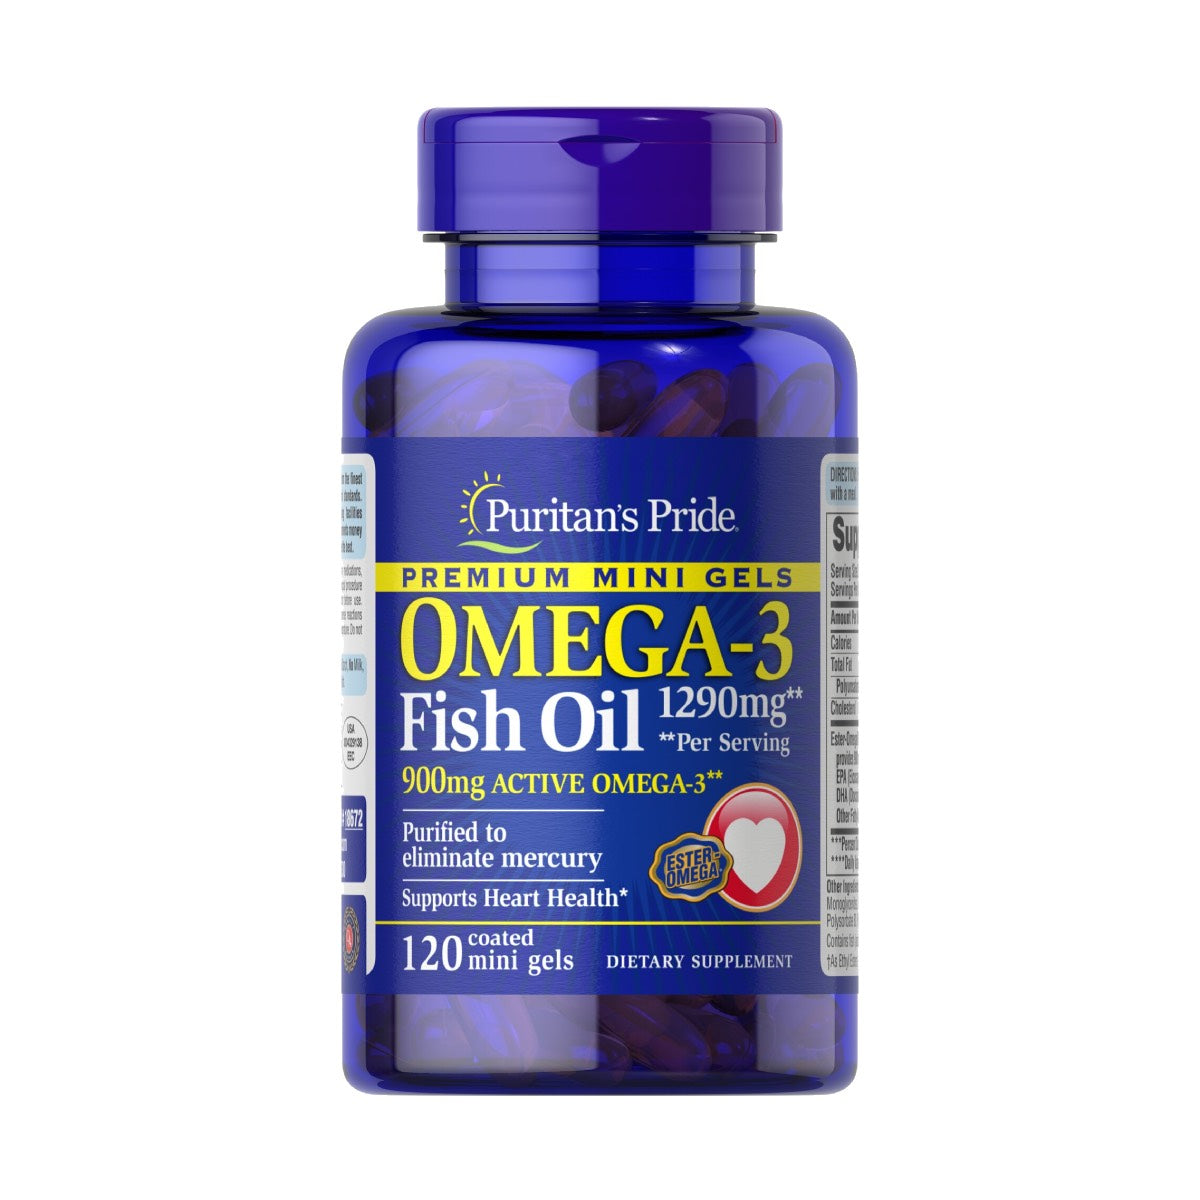 Puritan's Pride, Omega-3 Fish Oil 1290 mg Mini Gels (900 mg Active Omega-3) Per Serving